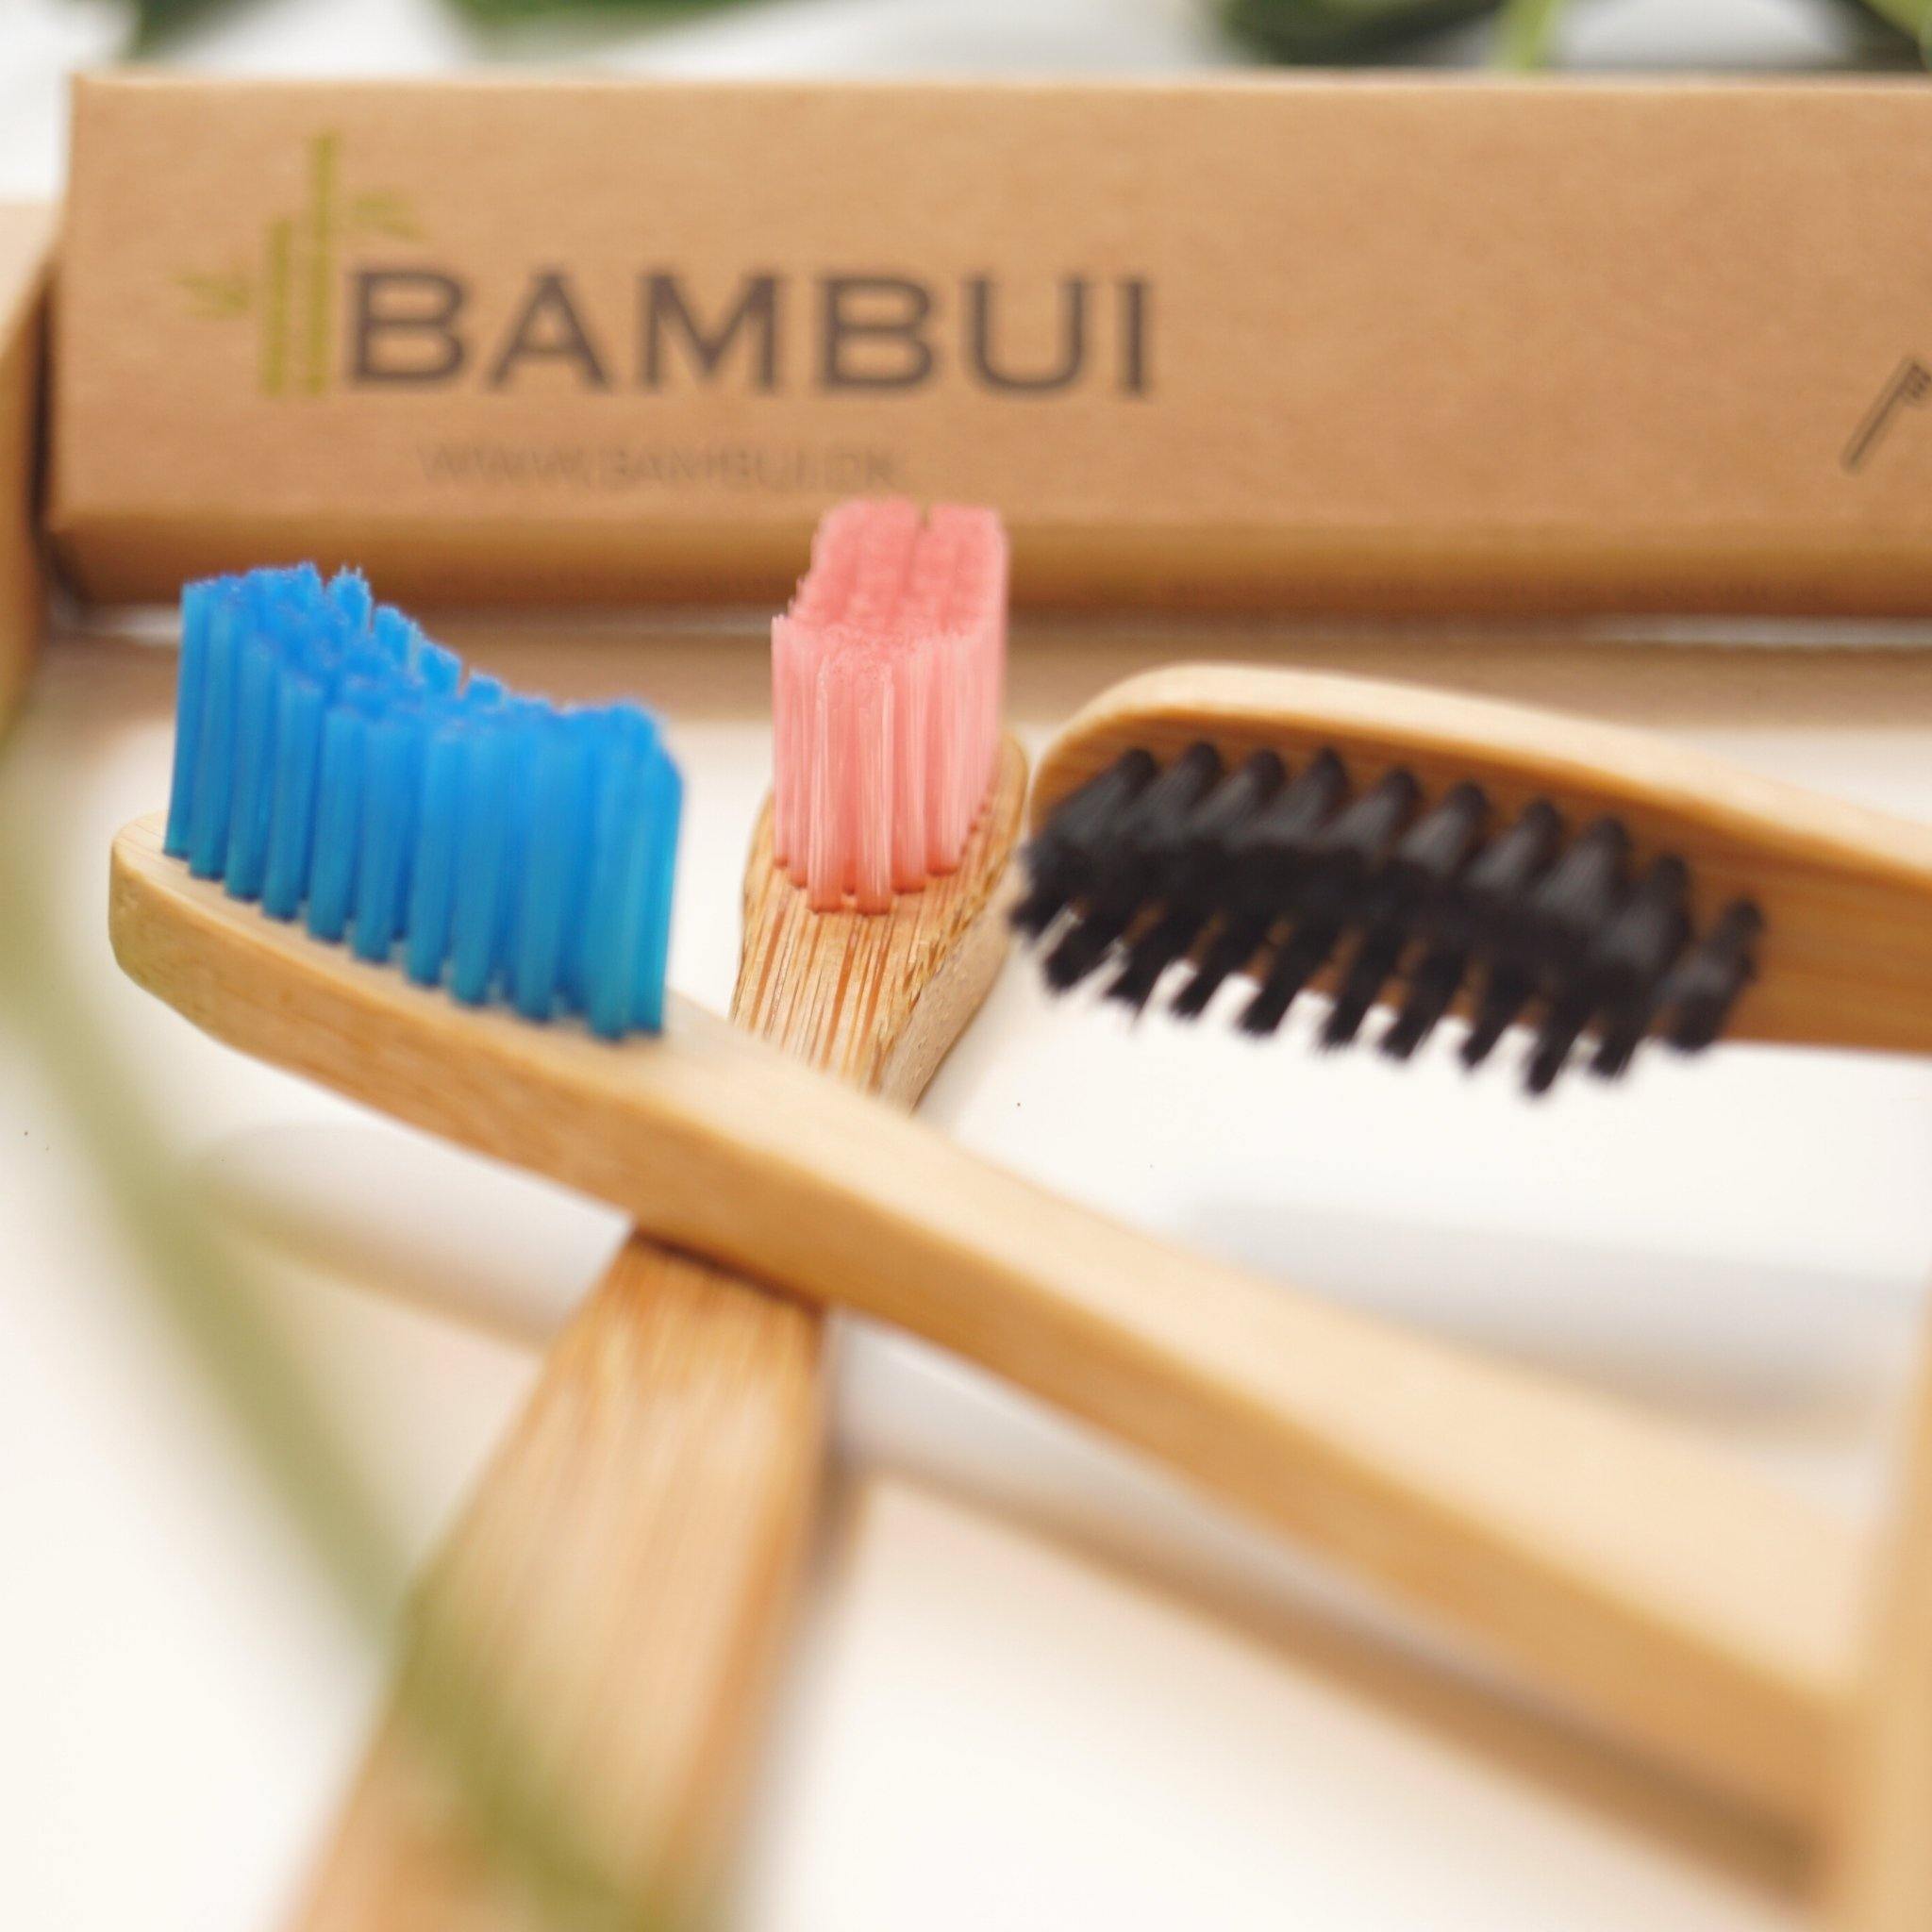 Bambus Tandbørste | Gratis Bestil hos Bambui.dk